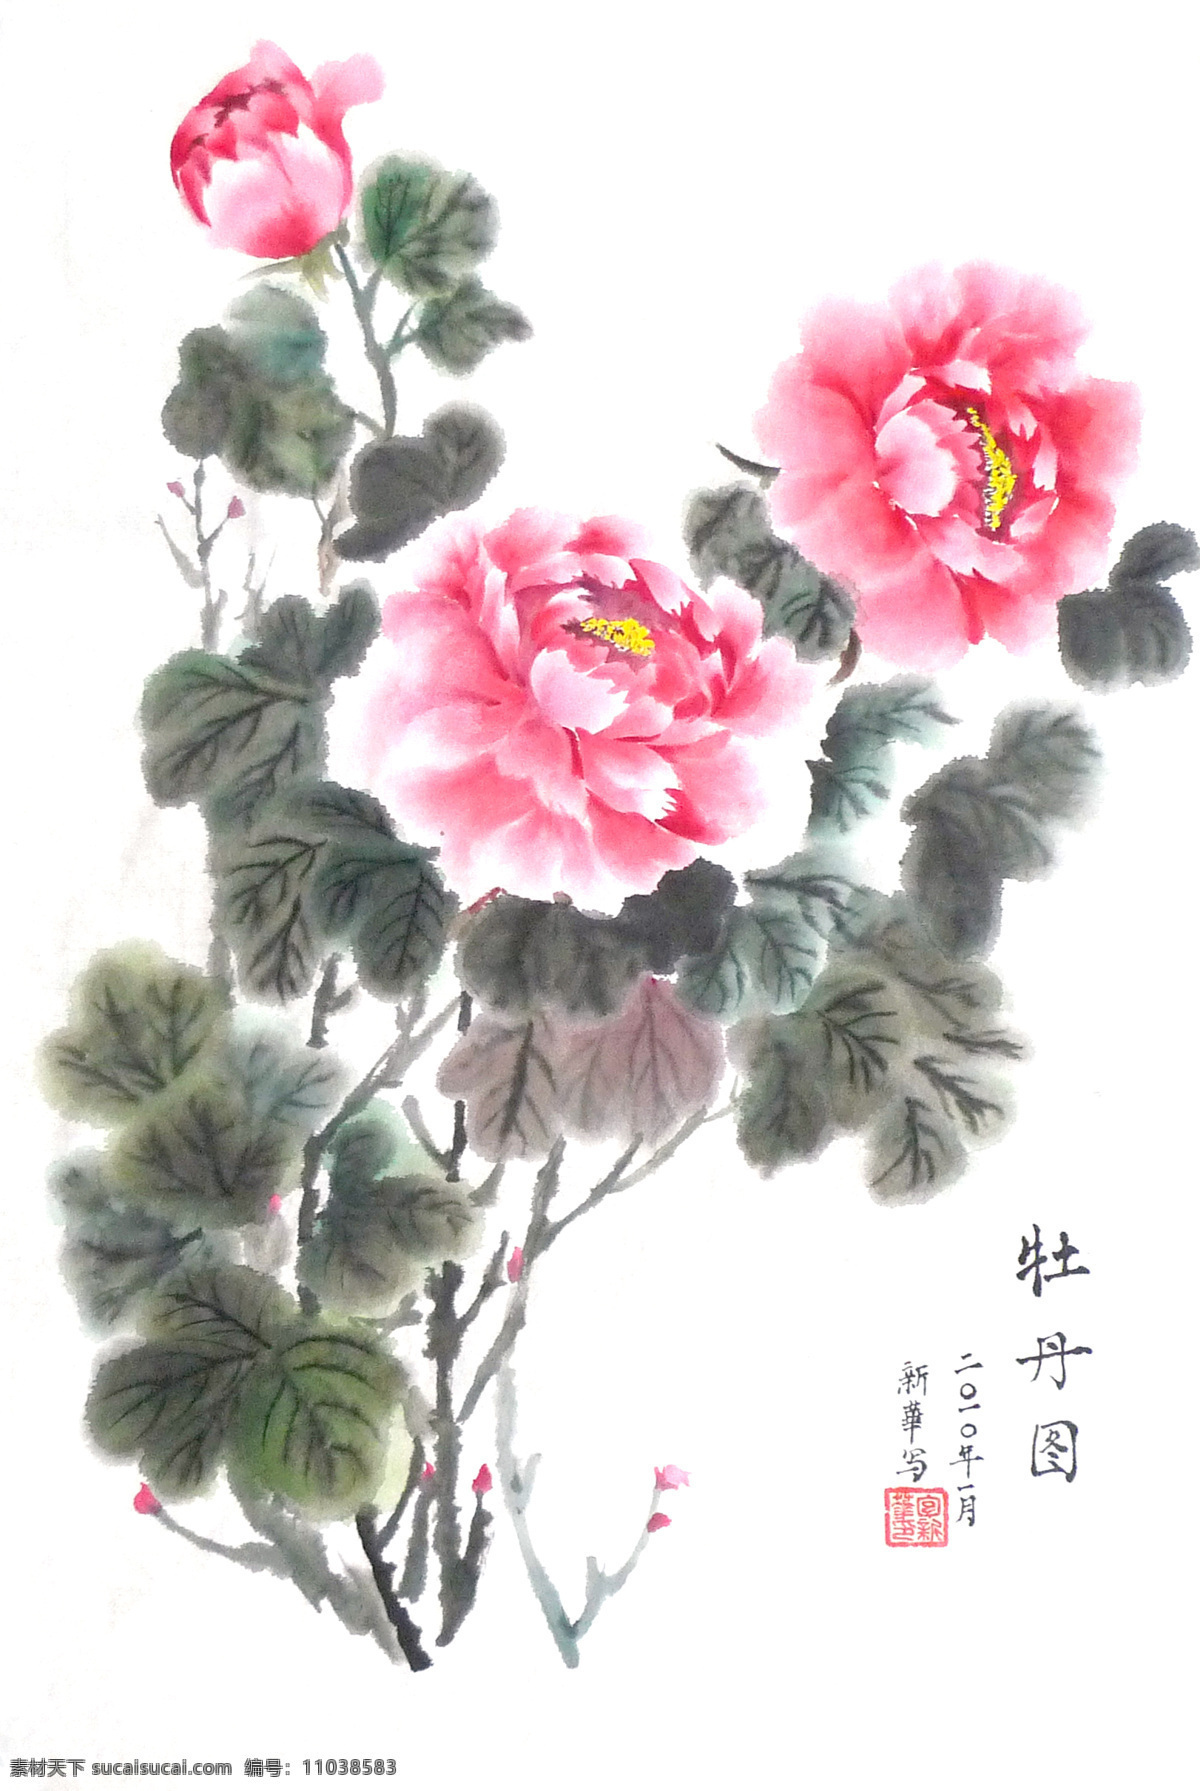 国画 牡丹 水墨画 中国画 中国艺术 绘画艺术 装饰画 中堂画 书画 文化艺术 书画文字